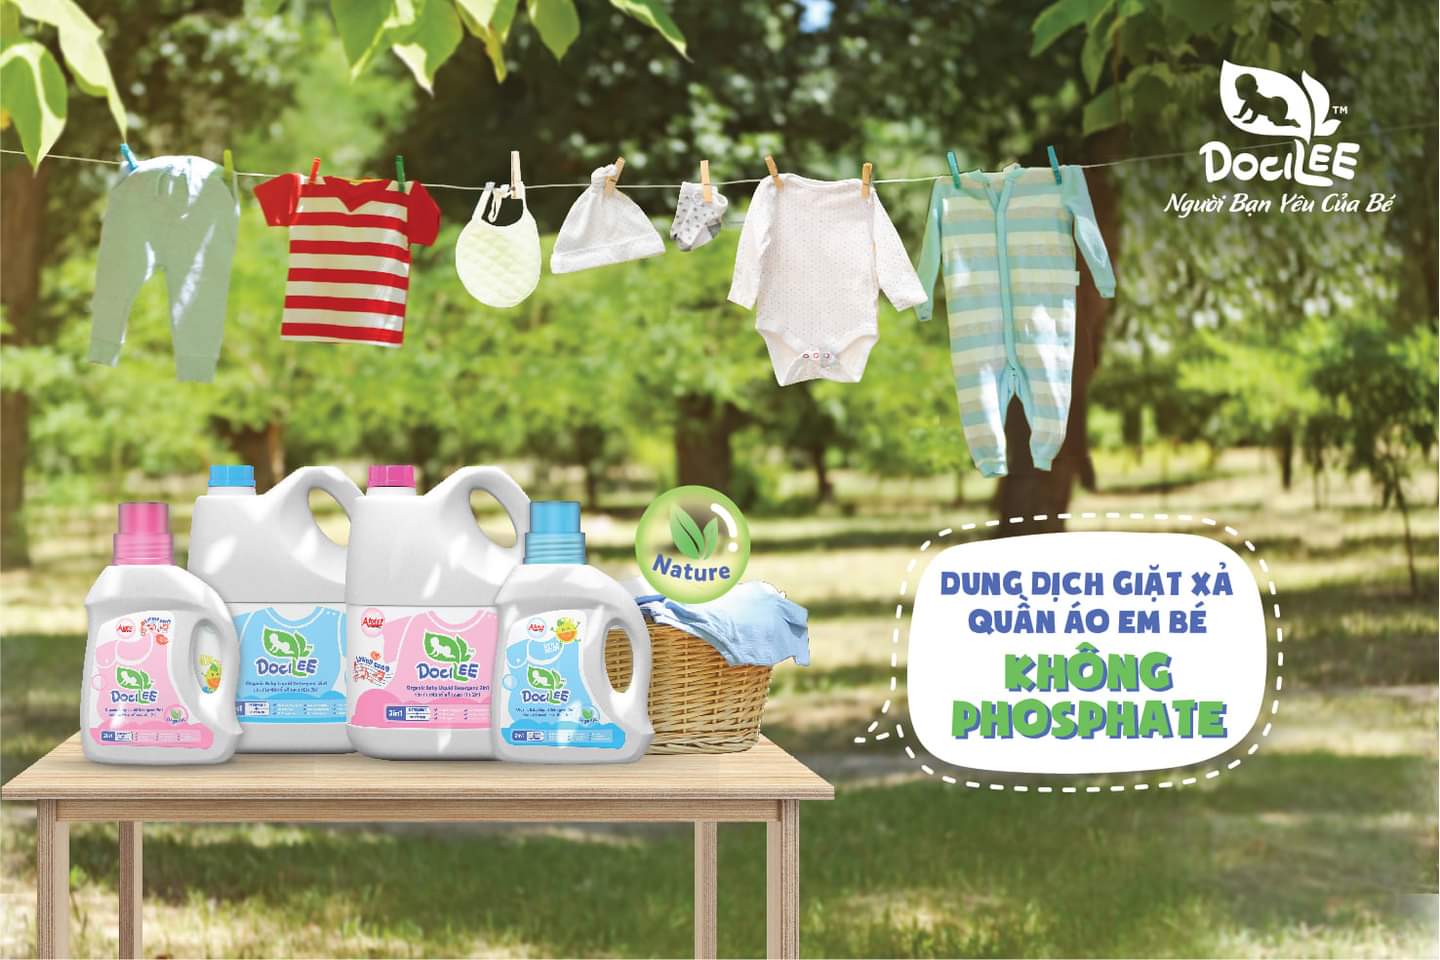 Warning: Baby liquid detergent contains Phosphate - Big Hazards